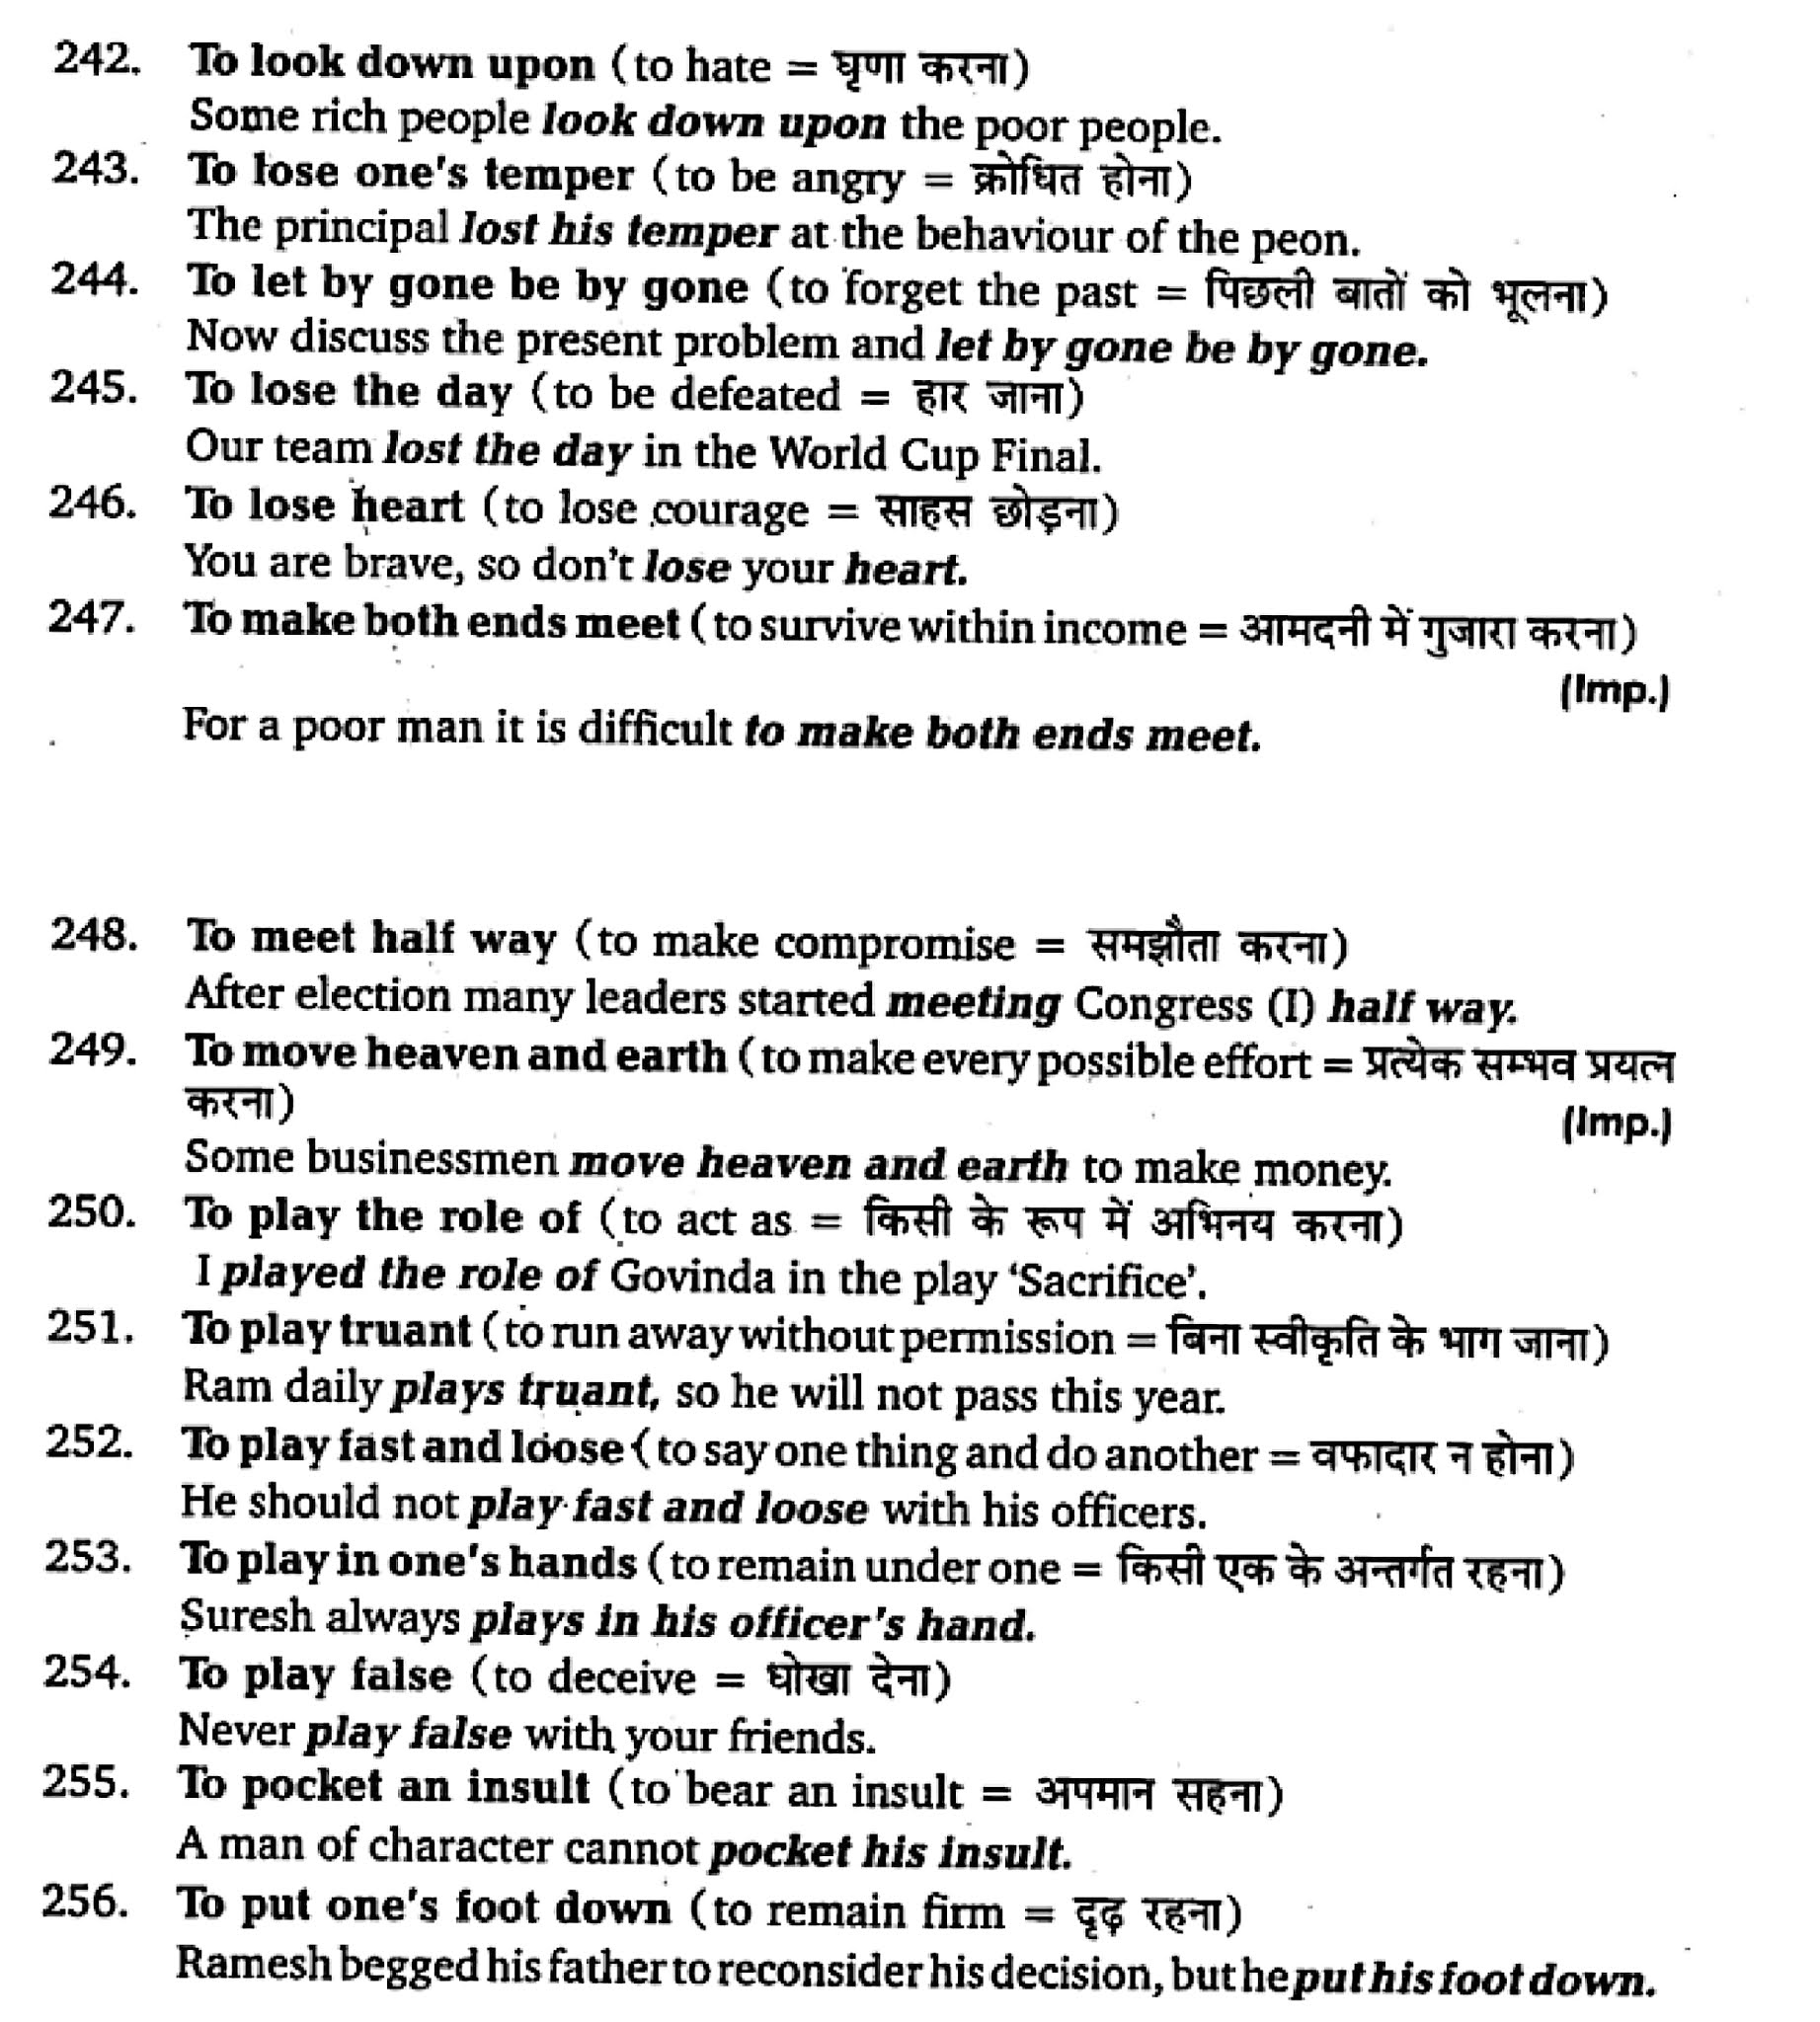 कक्षा 11 अंग्रेज़ी  शब्दावली अध्याय 5  के नोट्स हिंदी में एनसीईआरटी समाधान,   class 11 english Synonyms chapter 5,  class 11 english Synonyms chapter 5 ncert solutions in hindi,  class 11 english Synonyms chapter 5 notes in hindi,  class 11 english Synonyms chapter 5 question answer,  class 11 english Synonyms chapter 5 notes,  11   class Synonyms chapter 5 Synonyms chapter 5 in hindi,  class 11 english Synonyms chapter 5 in hindi,  class 11 english Synonyms chapter 5 important questions in hindi,  class 11 english  chapter 5 notes in hindi,  class 11 english Synonyms chapter 5 test,  class 11 english  chapter 1 Synonyms chapter 5 pdf,  class 11 english Synonyms chapter 5 notes pdf,  class 11 english Synonyms chapter 5 exercise solutions,  class 11 english Synonyms chapter 5, class 11 english Synonyms chapter 5 notes study rankers,  class 11 english Synonyms chapter 5 notes,  class 11 english  chapter 5 notes,   Synonyms chapter 5  class 11  notes pdf,  Synonyms chapter 5 class 11  notes 5051 ncert,   Synonyms chapter 5 class 11 pdf,    Synonyms chapter 5  book,     Synonyms chapter 5 quiz class 11  ,       11  th Synonyms chapter 5    book up board,       up board 11  th Synonyms chapter 5 notes,  कक्षा 11 अंग्रेज़ी  शब्दावली अध्याय 5 , कक्षा 11 अंग्रेज़ी का शब्दावली अध्याय 5  ncert solution in hindi, कक्षा 11 अंग्रेज़ी  के शब्दावली अध्याय 5  के नोट्स हिंदी में, कक्षा 11 का अंग्रेज़ी शब्दावली अध्याय 5 का प्रश्न उत्तर, कक्षा 11 अंग्रेज़ी  शब्दावली अध्याय 5  के नोट्स, 11 कक्षा अंग्रेज़ी  शब्दावली अध्याय 5   हिंदी में,कक्षा 11 अंग्रेज़ी  शब्दावली अध्याय 5  हिंदी में, कक्षा 11 अंग्रेज़ी  शब्दावली अध्याय 5  महत्वपूर्ण प्रश्न हिंदी में,कक्षा 11 के अंग्रेज़ी के नोट्स हिंदी में,अंग्रेज़ी  कक्षा 11 नोट्स pdf,  अंग्रेज़ी  कक्षा 11 नोट्स 2021 ncert,  अंग्रेज़ी  कक्षा 11 pdf,  अंग्रेज़ी  पुस्तक,  अंग्रेज़ी की बुक,  अंग्रेज़ी  प्रश्नोत्तरी class 11  , 11   वीं अंग्रेज़ी  पुस्तक up board,  बिहार बोर्ड 11  पुस्तक वीं अंग्रेज़ी नोट्स,    11th Prose chapter 1   book in hindi, 11  th Prose chapter 1 notes in hindi, cbse books for class 11  , cbse books in hindi, cbse ncert books, class 11   Prose chapter 1   notes in hindi,  class 11   hindi ncert solutions, Prose chapter 1 2020, Prose chapter 1  2021, Prose chapter 1   2022, Prose chapter 1  book class 11  , Prose chapter 1 book in hindi, Prose chapter 1  class 11   in hindi, Prose chapter 1   notes for class 11   up board in hindi, ncert all books, ncert app in hindi, ncert book solution, ncert books class 10, ncert books class 11  , ncert books for class 7, ncert books for upsc in hindi, ncert books in hindi class 10, ncert books in hindi for class 11 Prose chapter 1  , ncert books in hindi for class 6, ncert books in hindi pdf, ncert class 11 hindi book, ncert english book, ncert Prose chapter 1  book in hindi, ncert Prose chapter 1  books in hindi pdf, ncert Prose chapter 1 class 11 ,  ncert in hindi,  old ncert books in hindi, online ncert books in hindi,  up board 11  th, up board 11  th syllabus, up board class 10 hindi book, up board class 11   books, up board class 11   new syllabus, up board intermediate Prose chapter 1  syllabus, up board intermediate syllabus 2021, Up board Master 2021, up board model paper 2021, up board model paper all subject, up board new syllabus of class 11  th Prose chapter 1 ,   11 वीं अंग्रेज़ी पुस्तक हिंदी में, 11  वीं अंग्रेज़ी  नोट्स हिंदी में, कक्षा 11   के लिए सीबीएससी पुस्तकें, कक्षा 11   अंग्रेज़ी नोट्स हिंदी में, कक्षा 11   हिंदी एनसीईआरटी समाधान,  अंग्रेज़ी  बुक इन हिंदी, अंग्रेज़ी क्लास 11   हिंदी में,  एनसीईआरटी अंग्रेज़ी की किताब हिंदी में,  बोर्ड 11 वीं तक, 11 वीं तक की पाठ्यक्रम, बोर्ड कक्षा 10 की हिंदी पुस्तक , बोर्ड की कक्षा 11   की किताबें, बोर्ड की कक्षा 11 की नई पाठ्यक्रम, बोर्ड अंग्रेज़ी 2020, यूपी   बोर्ड अंग्रेज़ी  2021, यूपी  बोर्ड अंग्रेज़ी 2022, यूपी  बोर्ड अंग्रेज़ी    2023, यूपी  बोर्ड इंटरमीडिएट अंग्रेज़ी सिलेबस, यूपी  बोर्ड इंटरमीडिएट सिलेबस 2021, यूपी  बोर्ड मास्टर 2021, यूपी  बोर्ड मॉडल पेपर 2021, यूपी  मॉडल पेपर सभी विषय, यूपी  बोर्ड न्यू क्लास का सिलेबस  11   वीं अंग्रेज़ी, अप बोर्ड पेपर 2021, यूपी बोर्ड सिलेबस 2021, यूपी बोर्ड सिलेबस 2022,